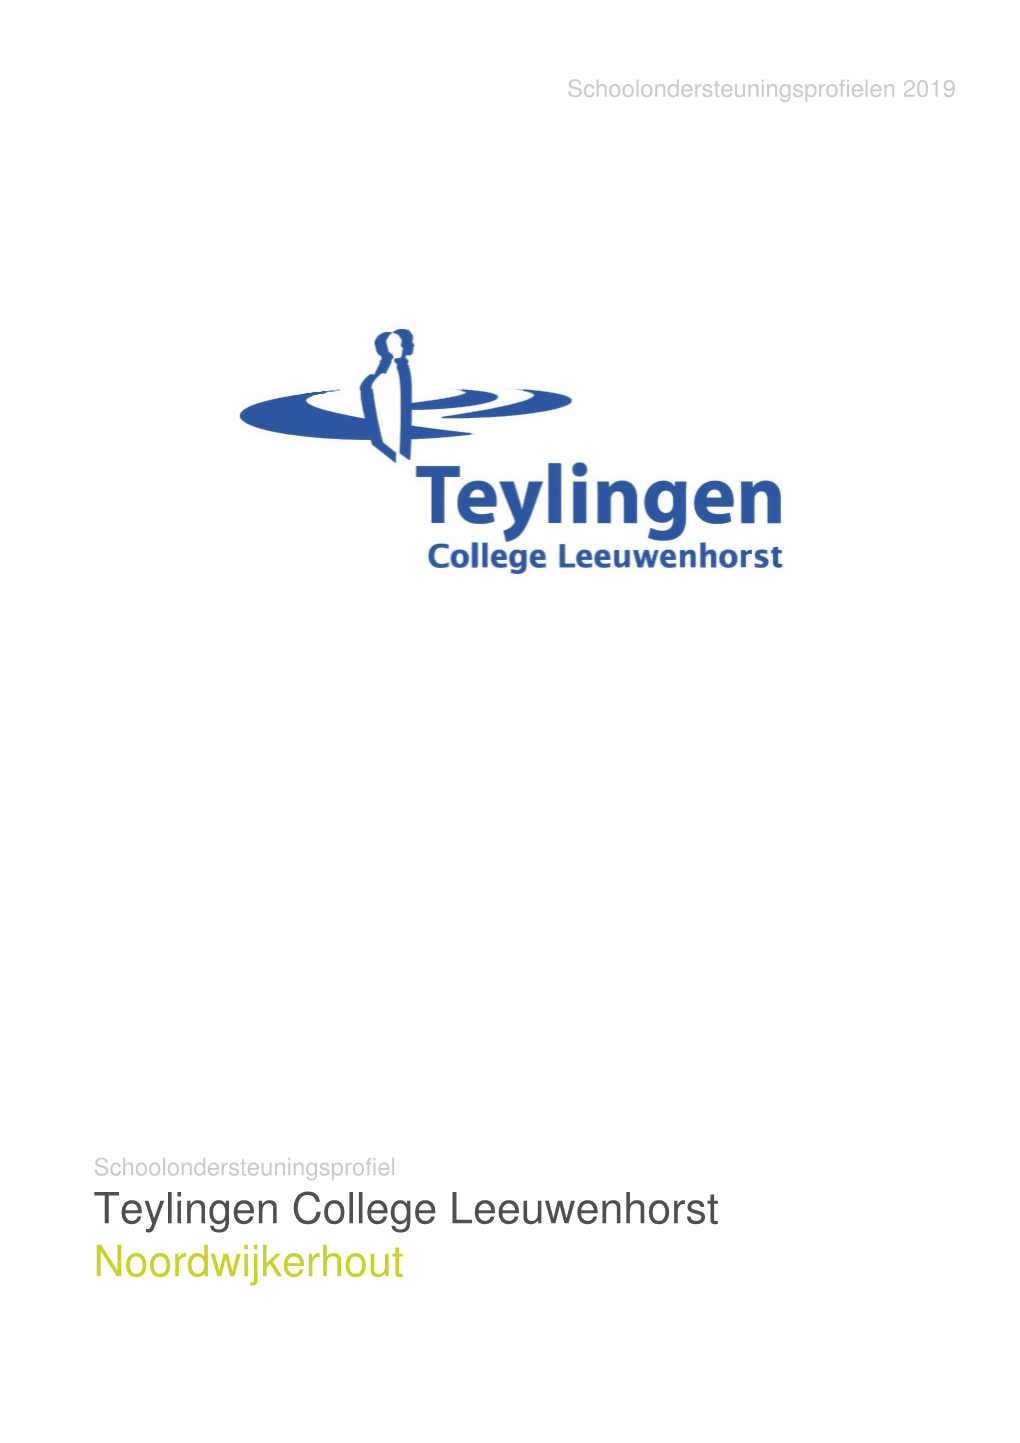 Teylingen College Leeuwenhorst Noordwijkerhout